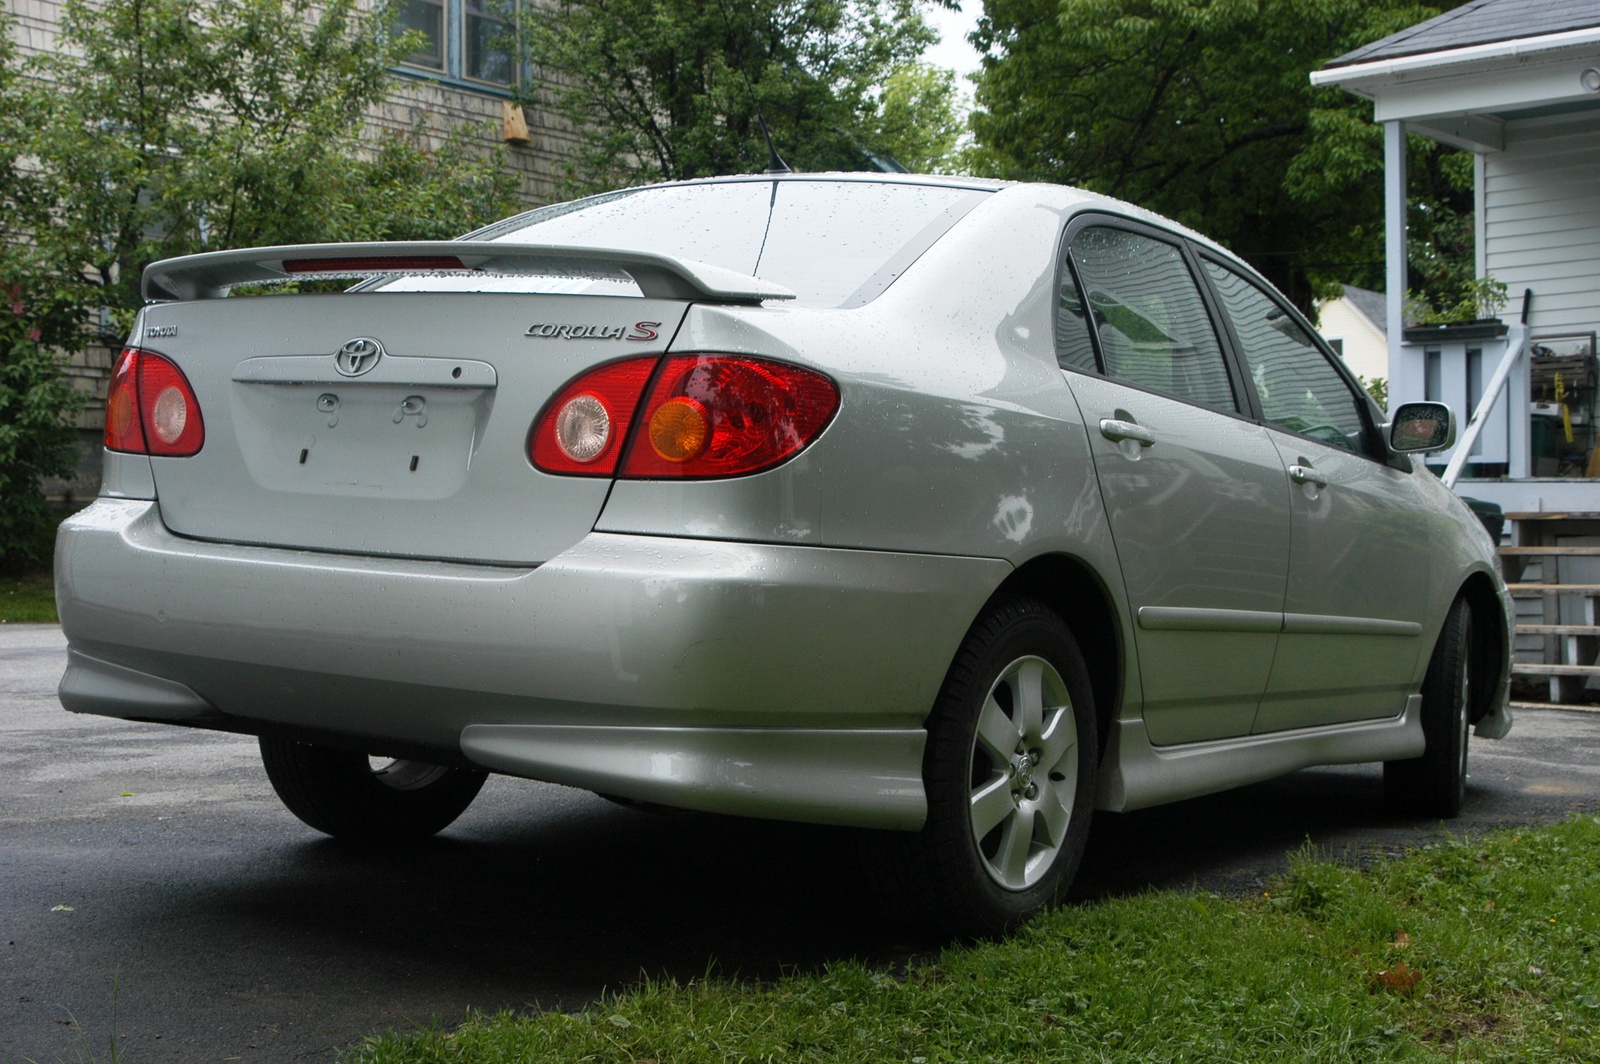 2004 Toyota Corolla - Exterior Pictures - CarGurus